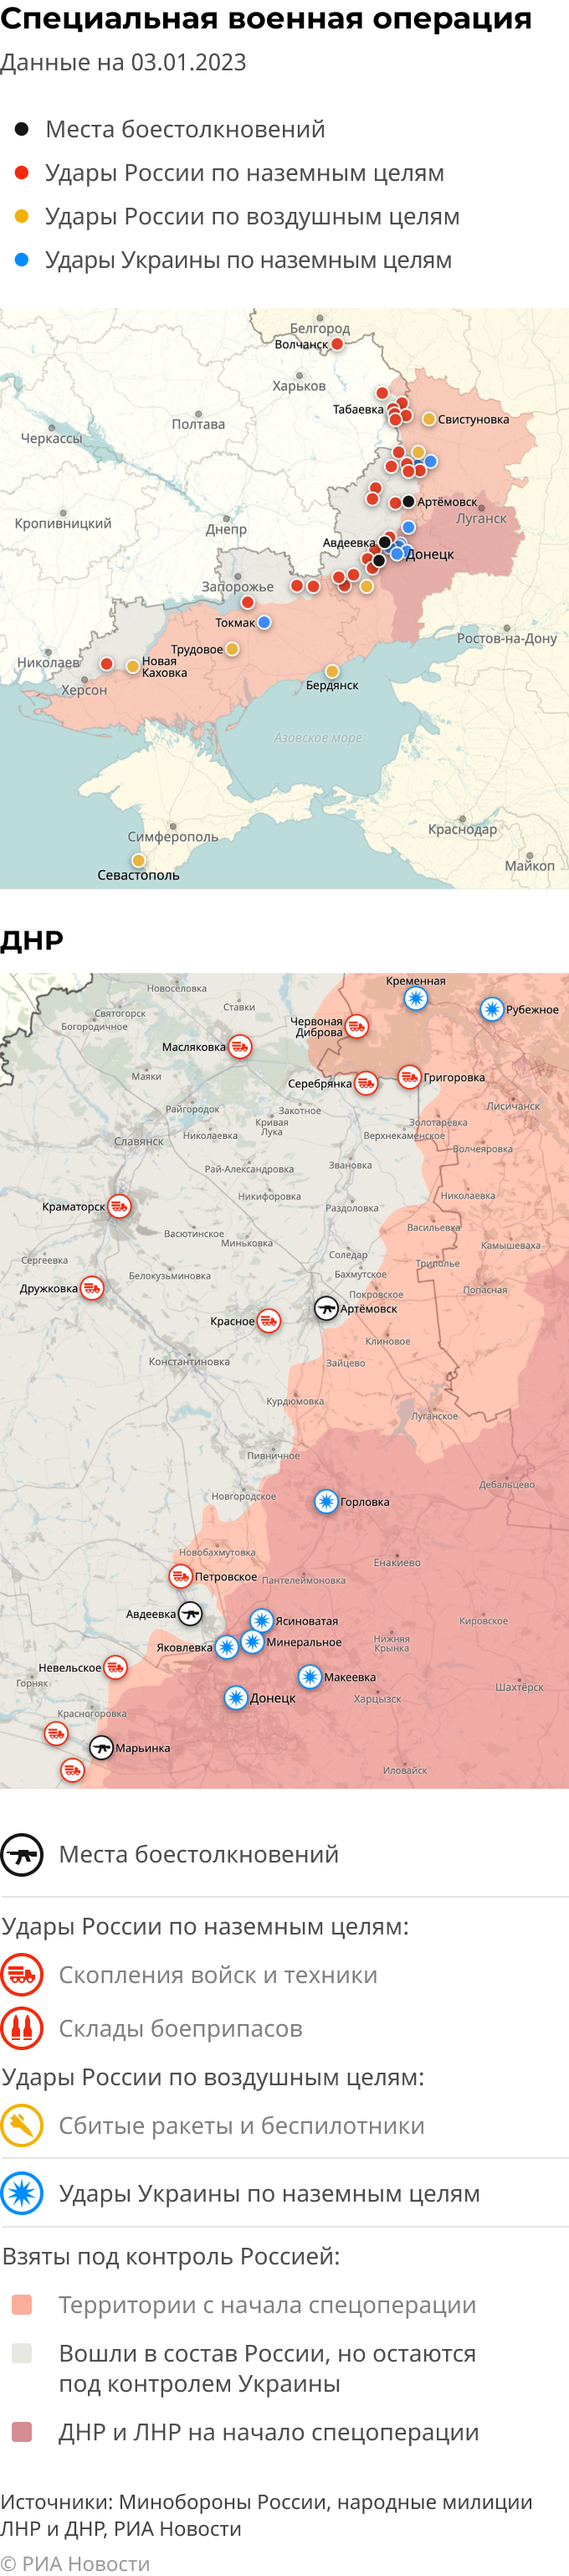 Карта спецоперации Вооруженных сил России на Украине на 03.01.2023